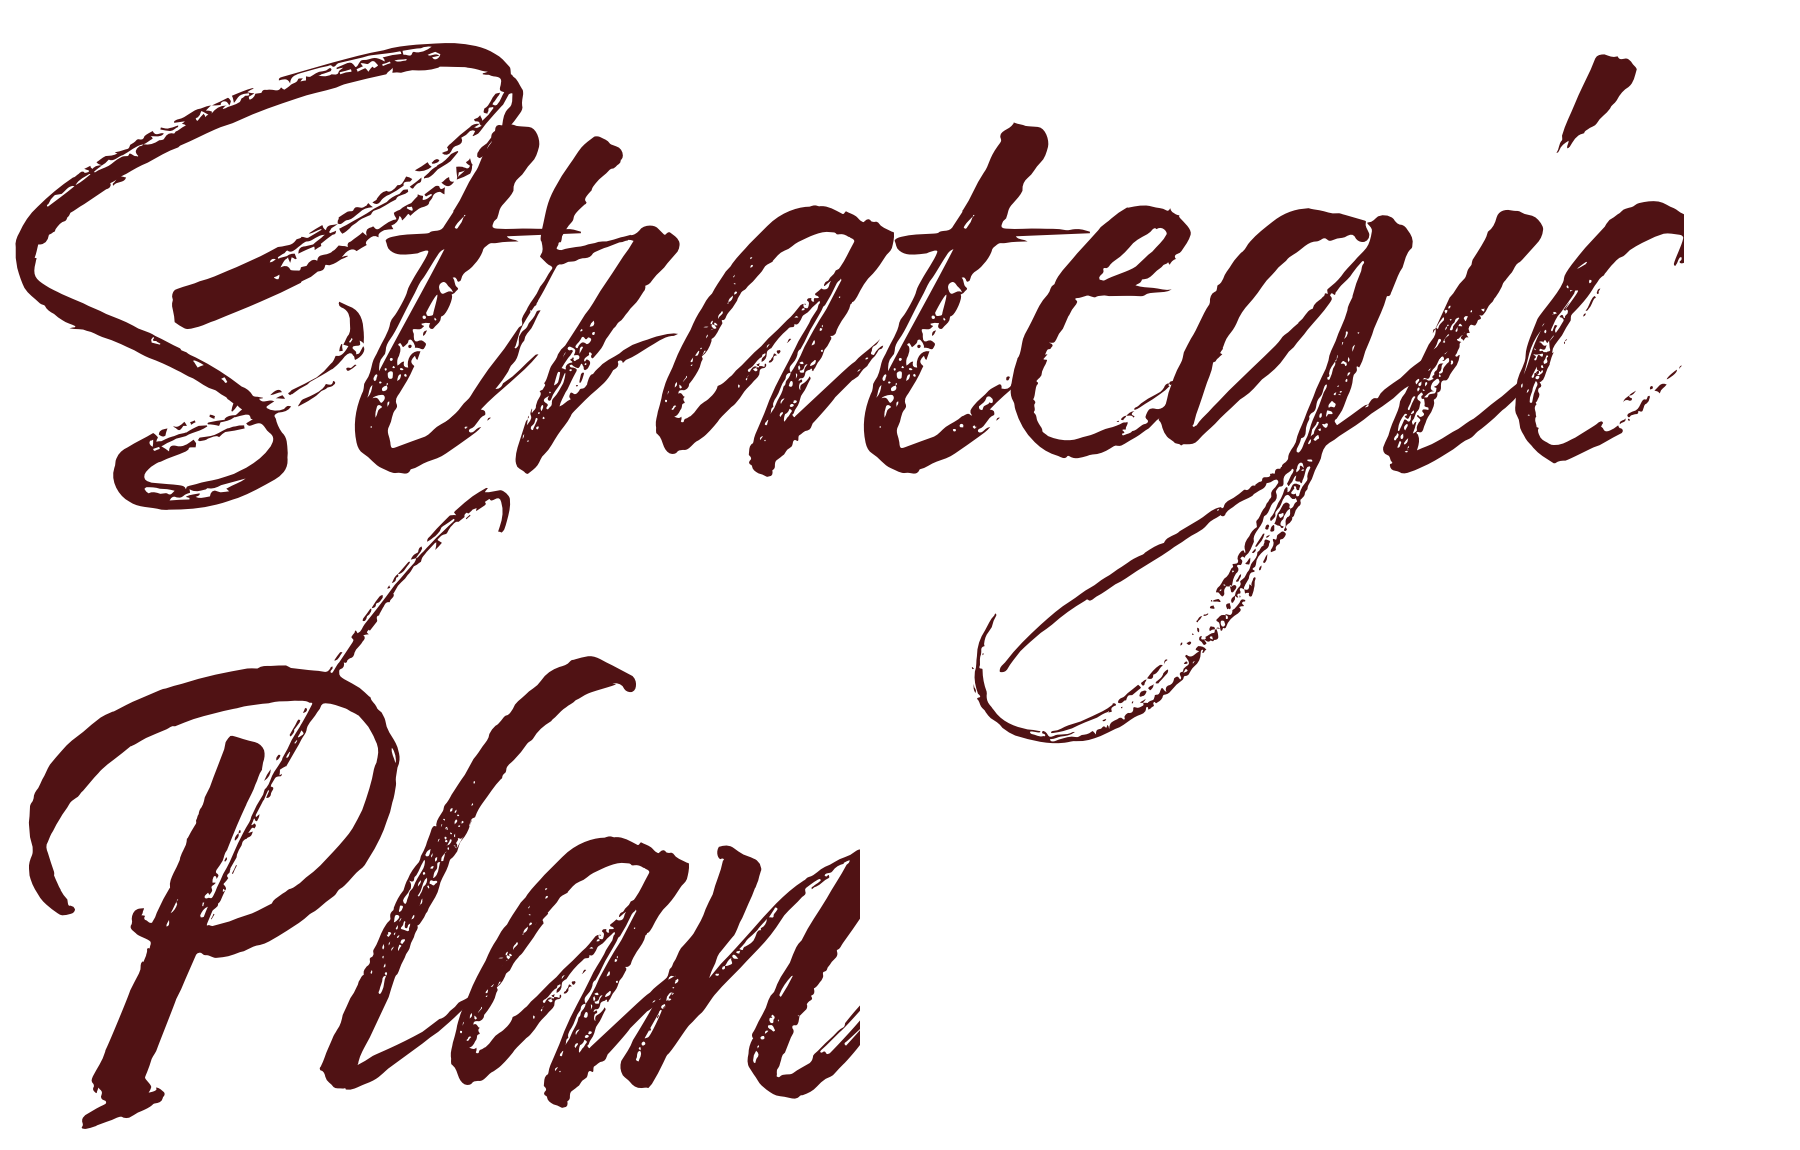 Words strategic plan in script